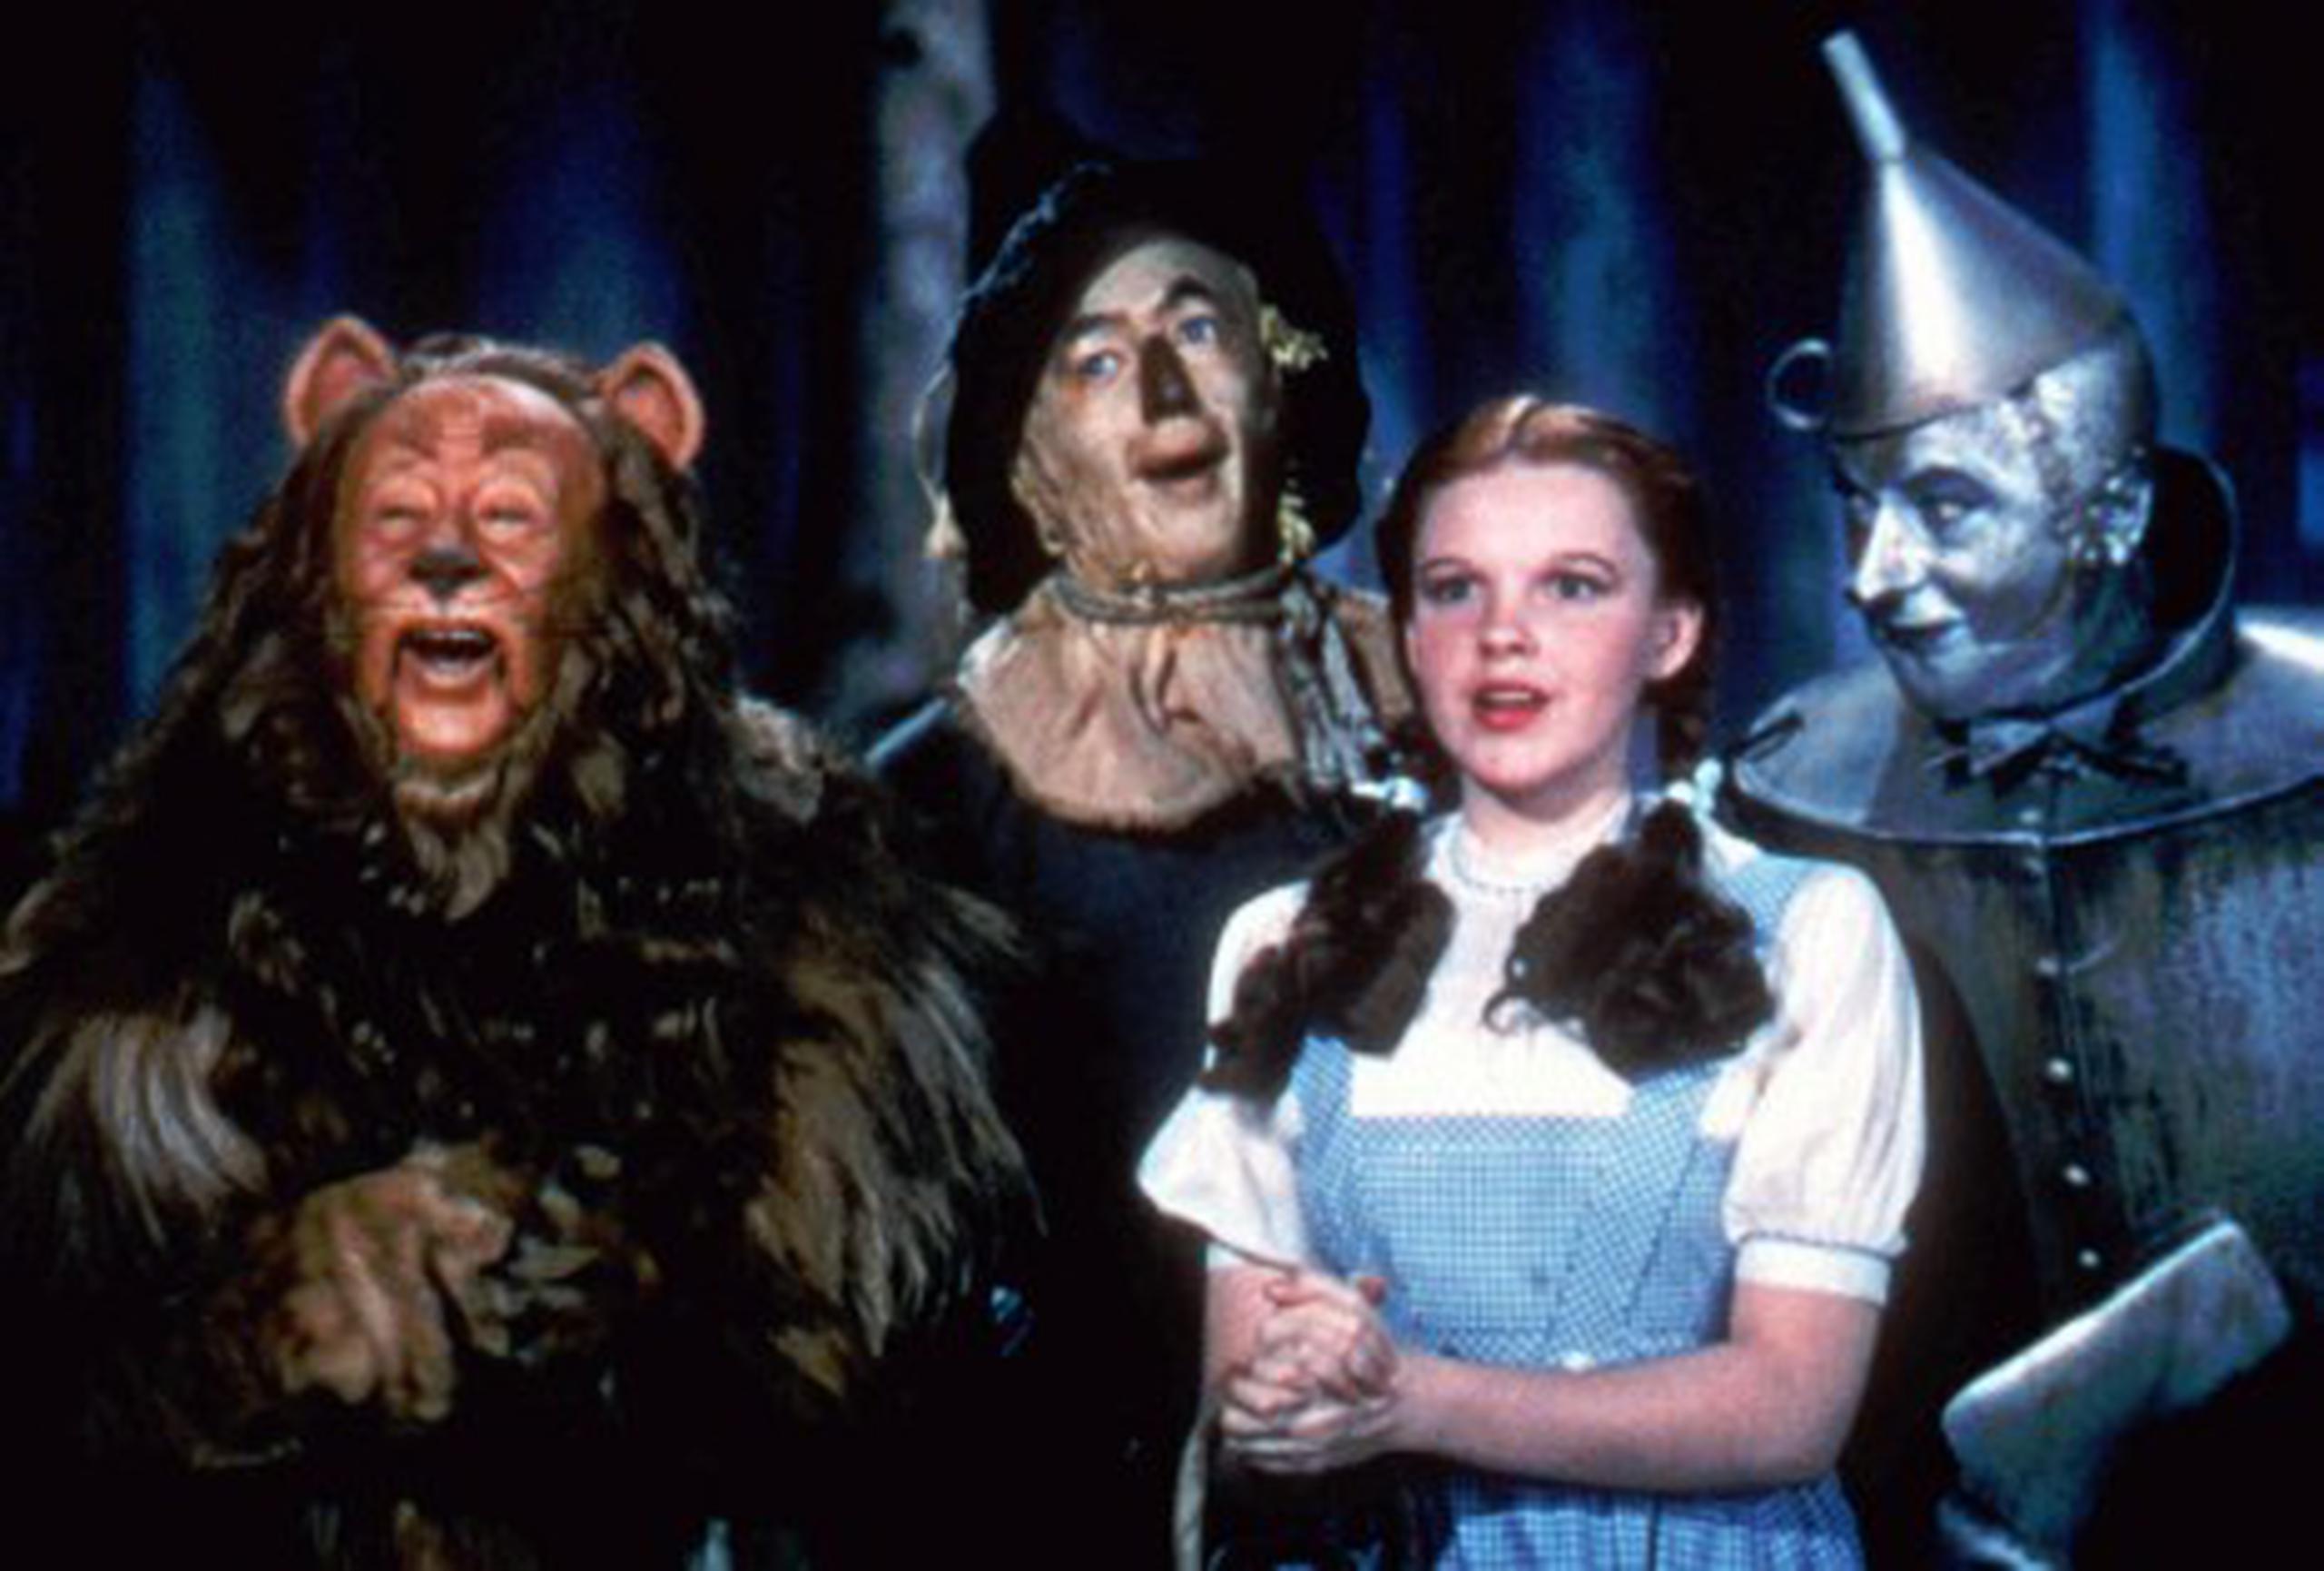 El clásico "The Wizard of Oz" de 1939 volverá a las pantallas en 2013 restaurado y convertido a 3D. (Archivo)